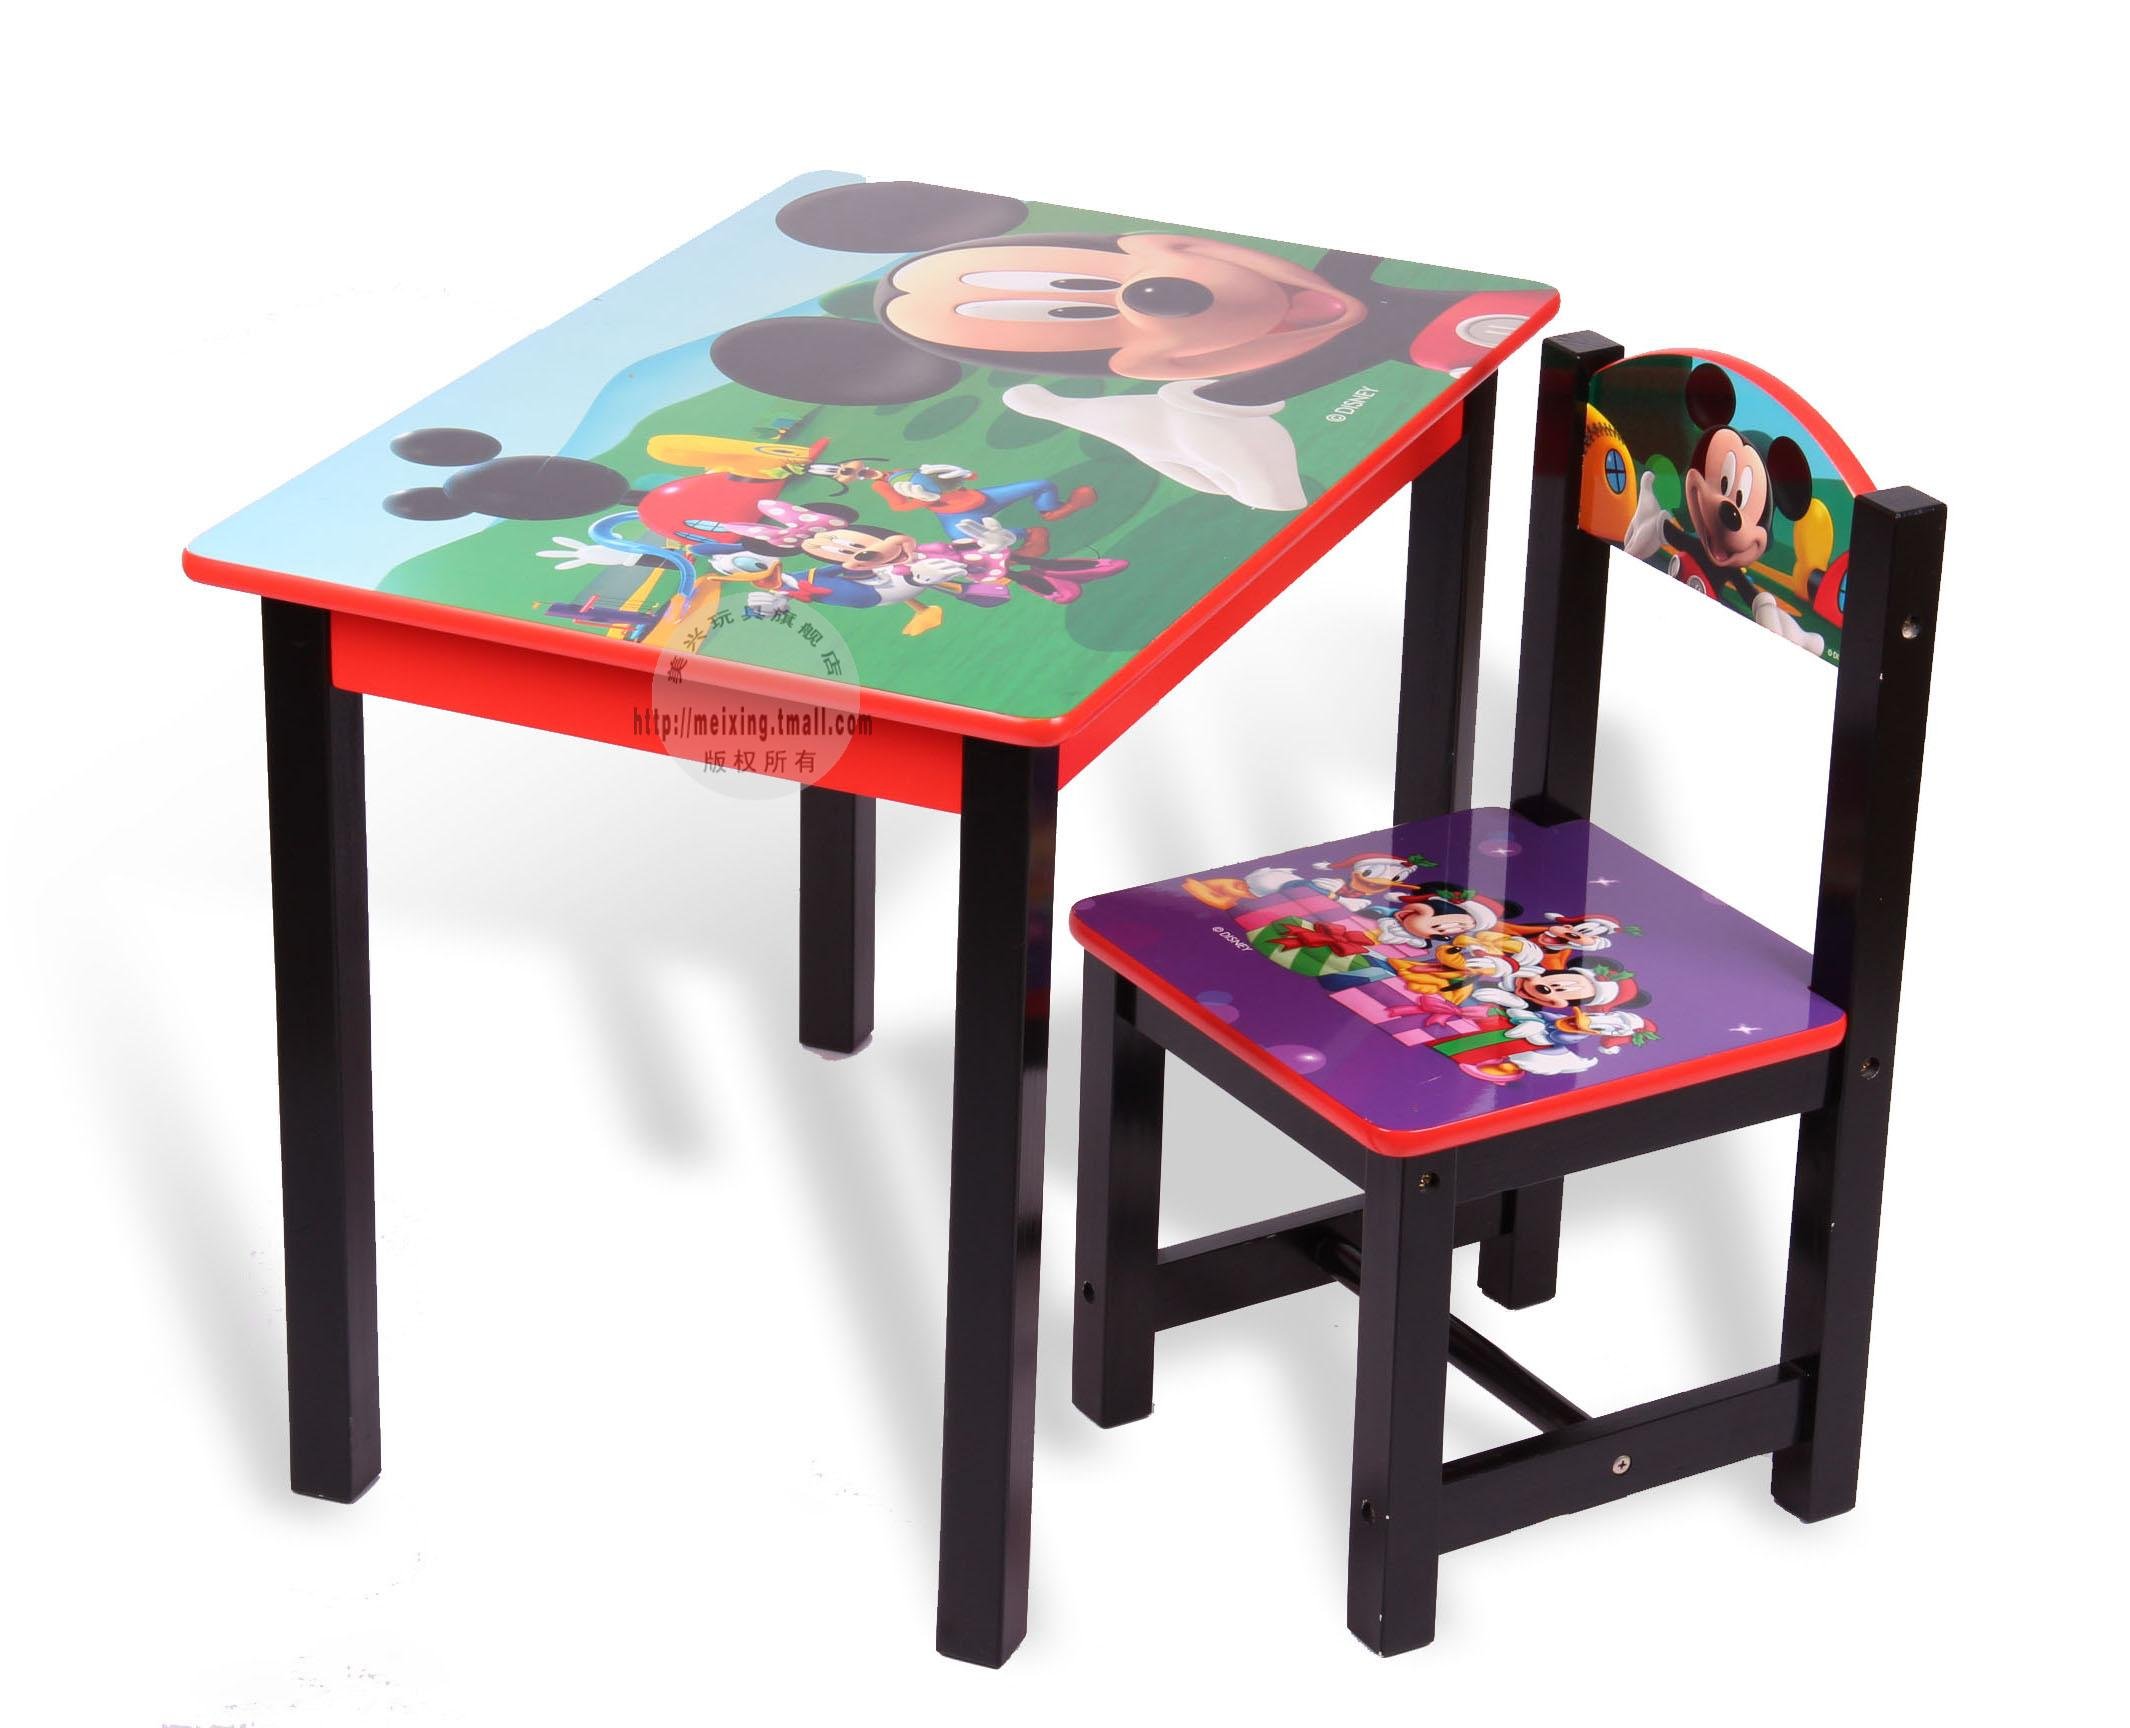 столик для детей на улицу